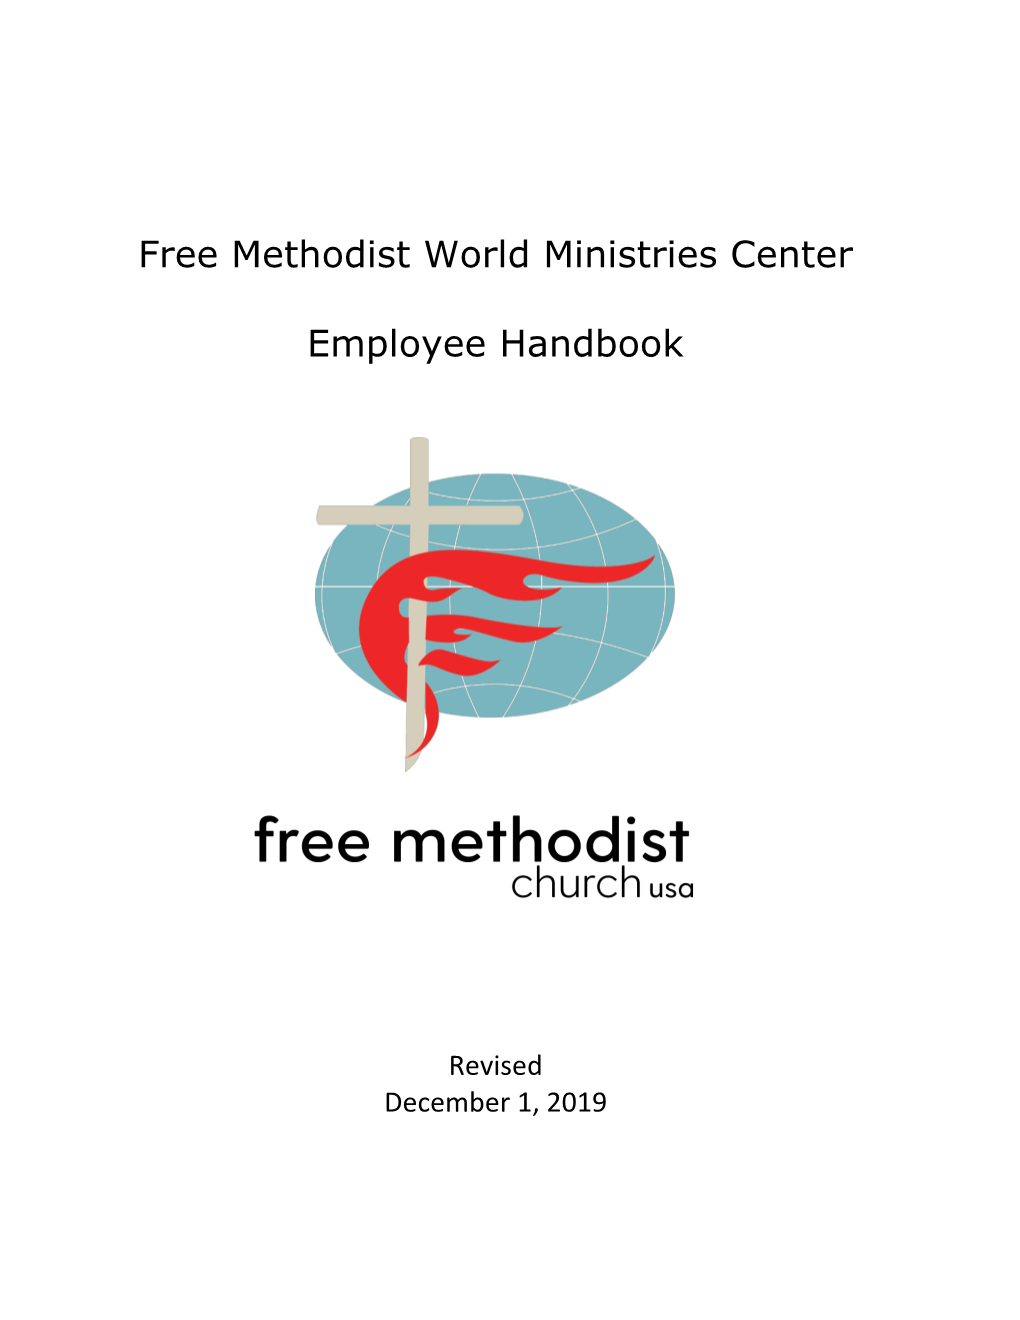 Free Methodist World Ministries Center Employee Handbook